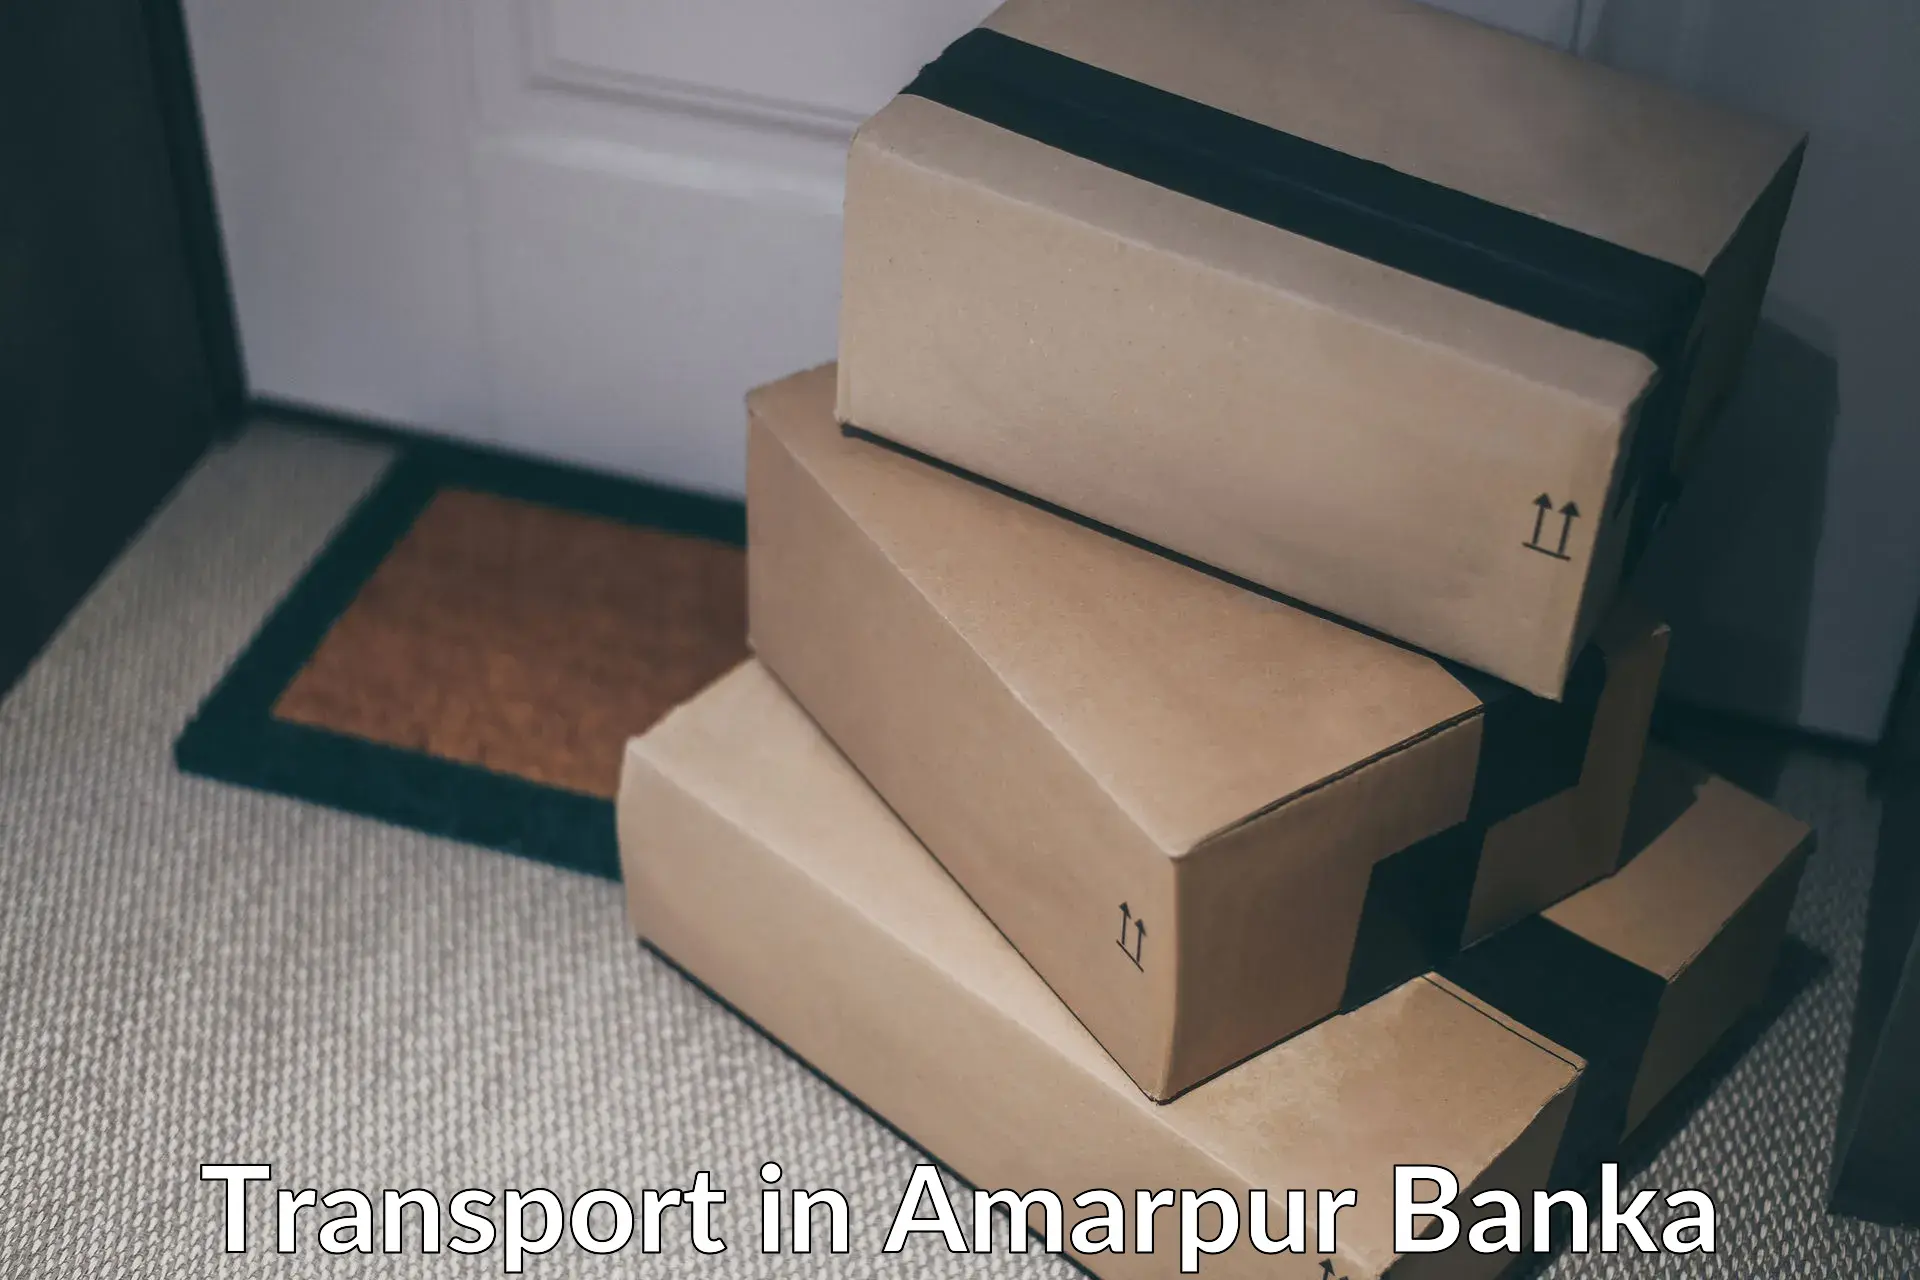 Parcel transport services in Amarpur Banka